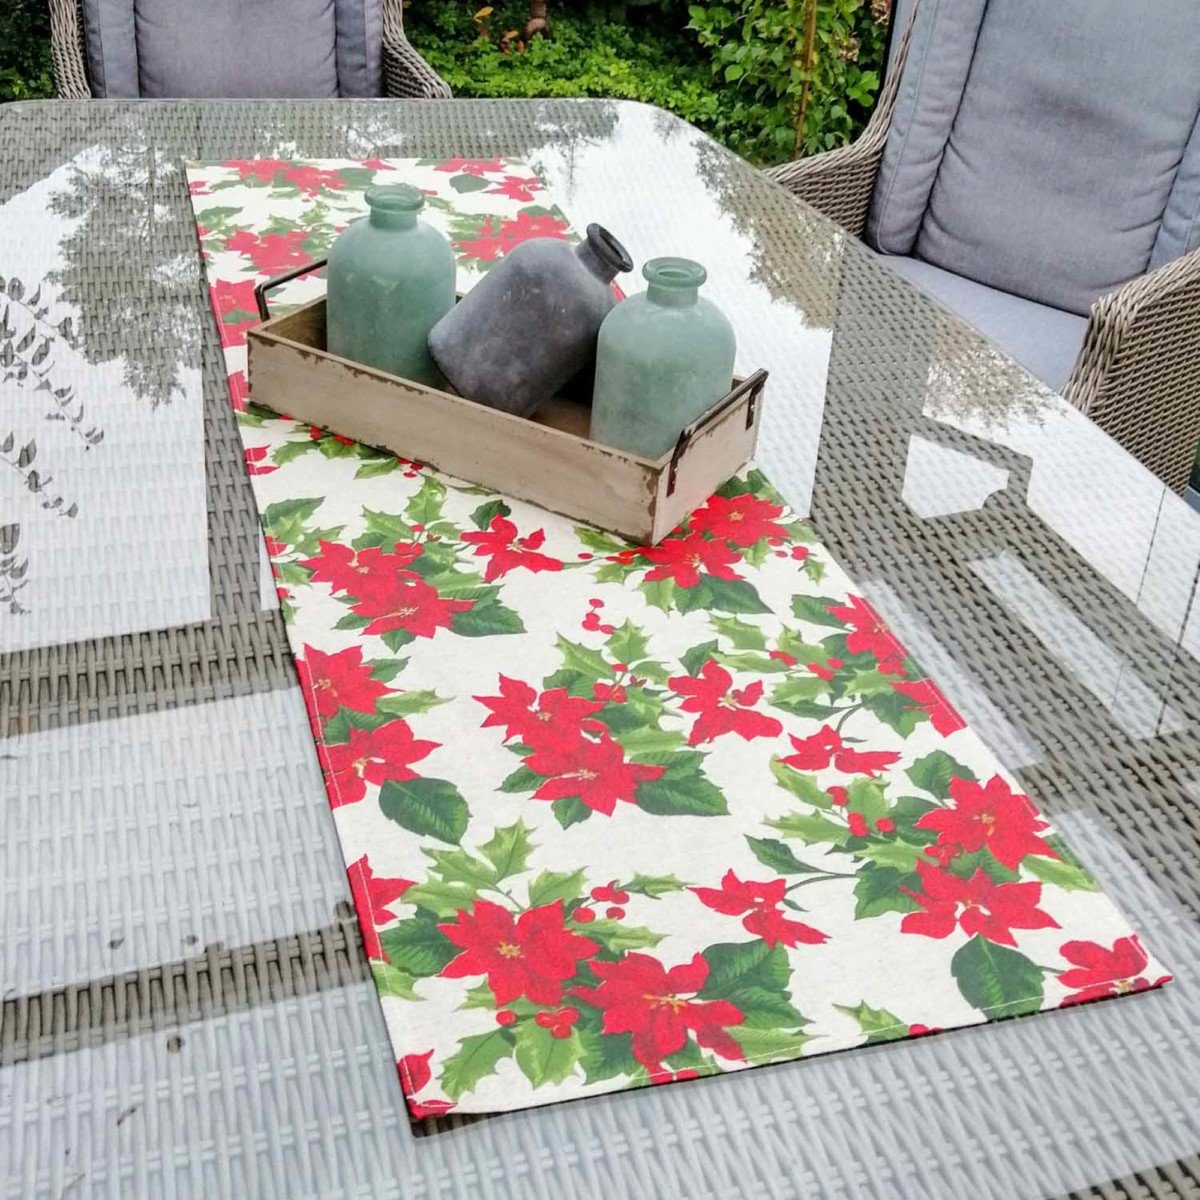 Tischläufer Beschichtete Tischläufer Mit Weihnachtsstern Baumwolle Liebe dekoriert